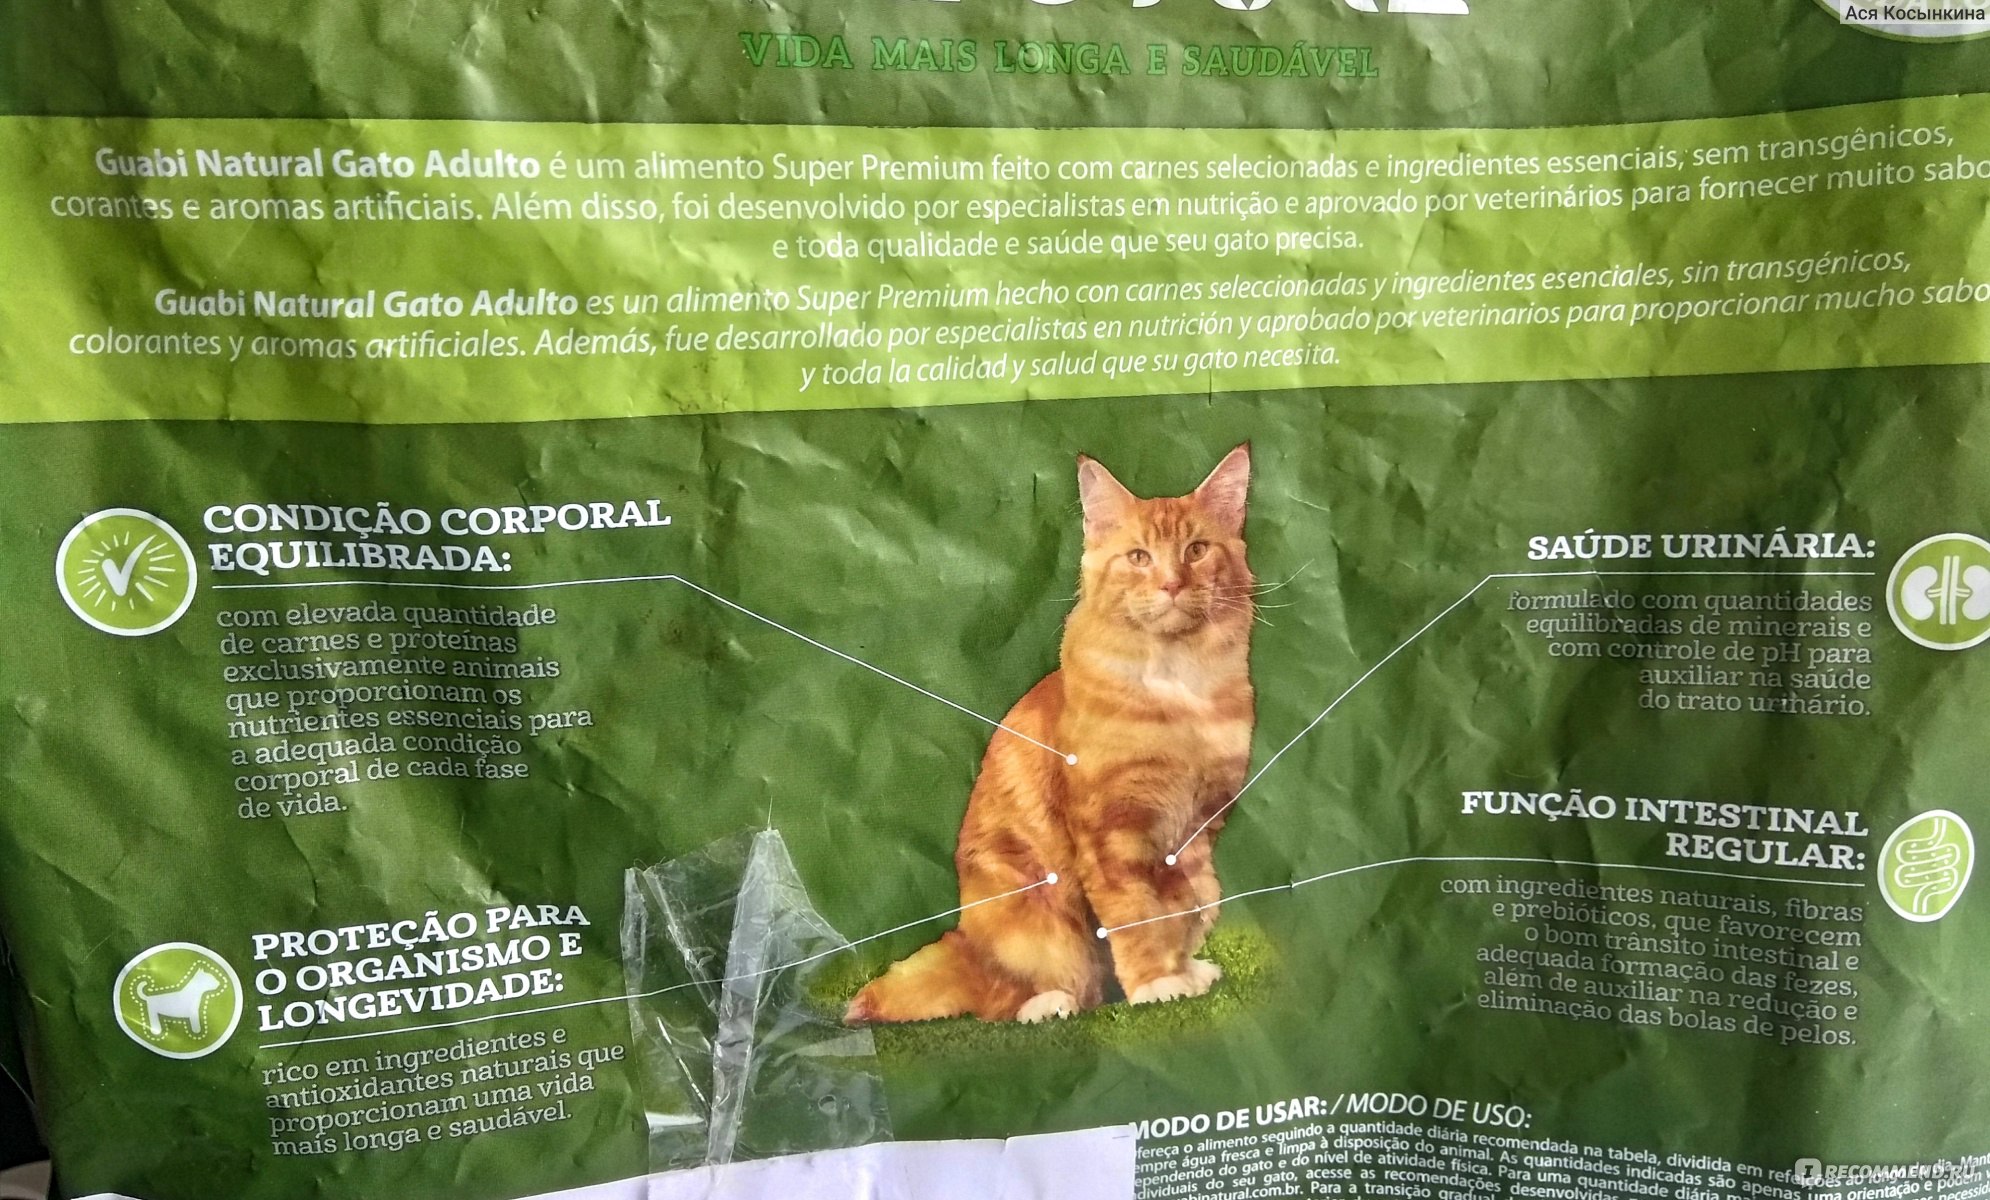 Корм guabi natural для кошек - отзывы ветеринаров и покупателей